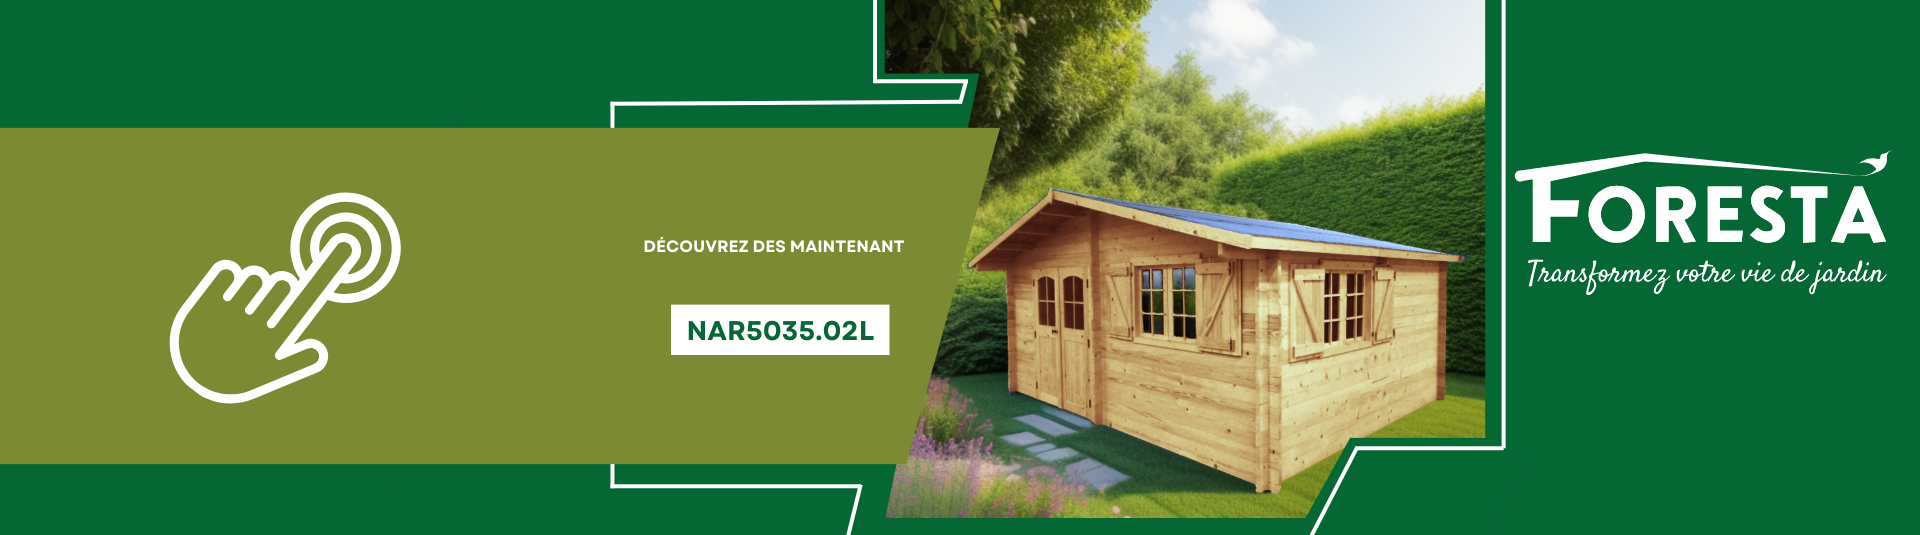 Garage Bois Digne 20 m² - Foresta Nova - préfabriqué haute qualité